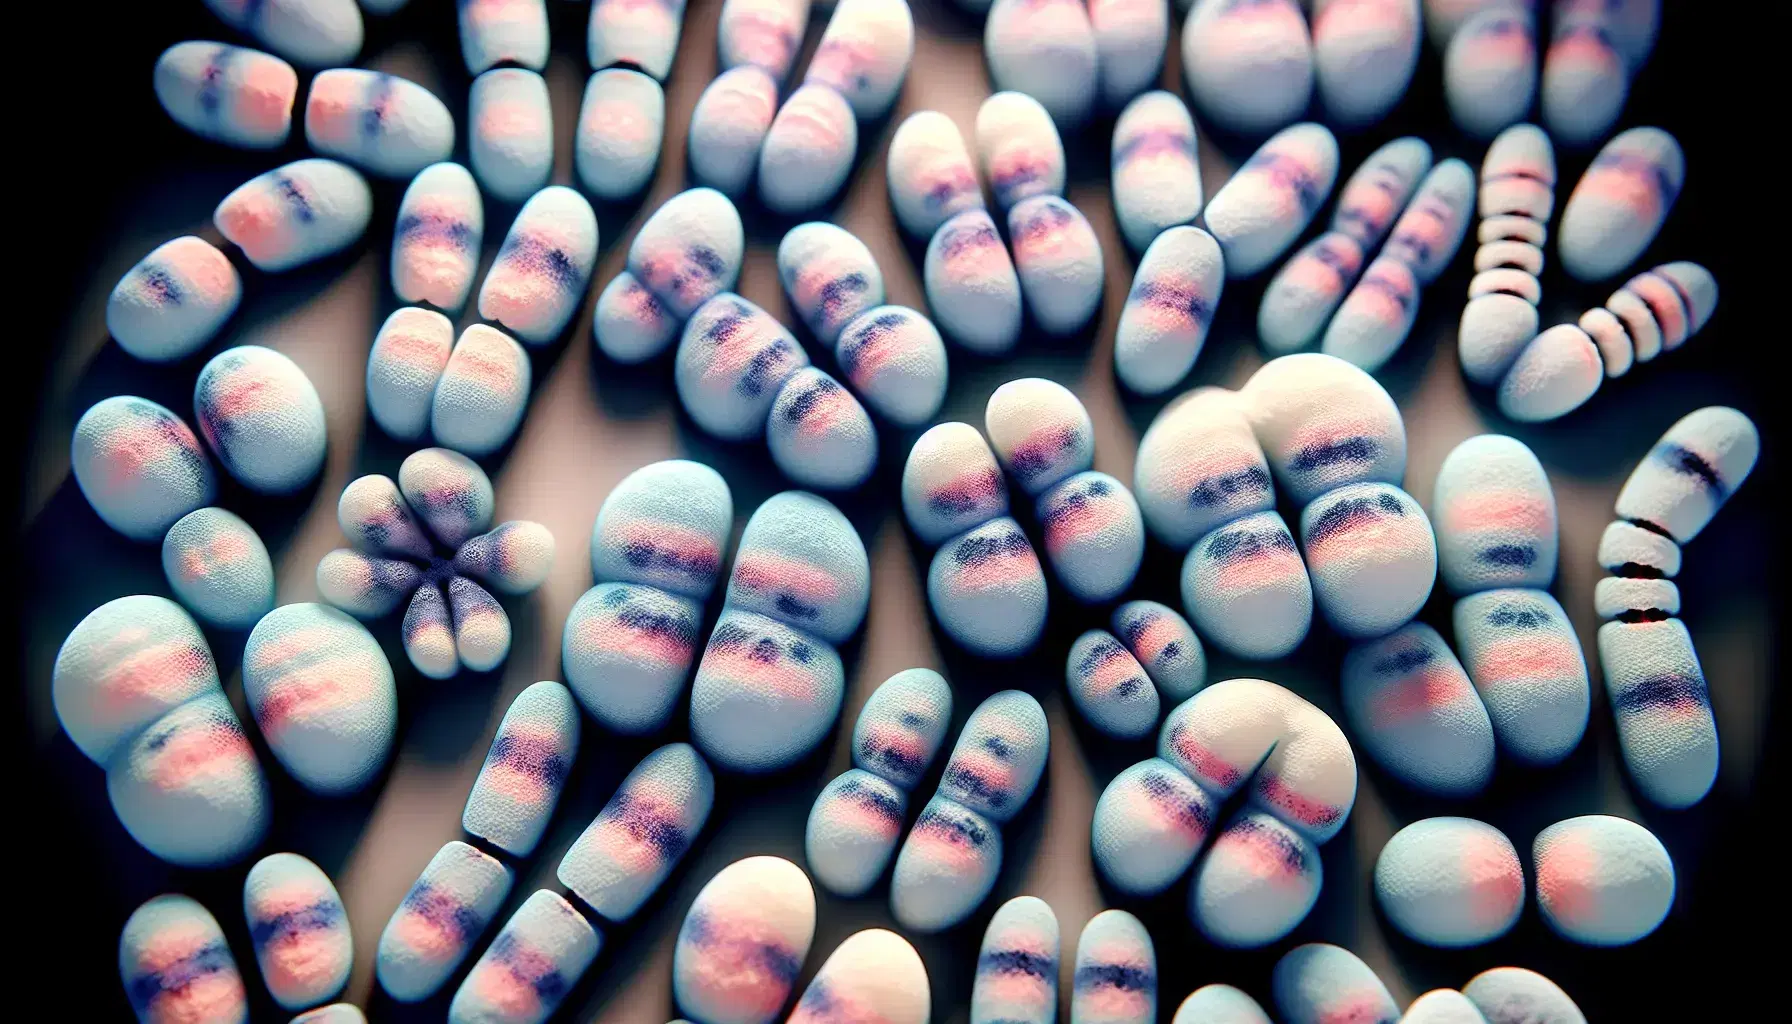 Cariotipo humano durante la metafase con 23 pares de cromosomas en tonos rosas y azules, destacando los cromosomas sexuales X y Y.